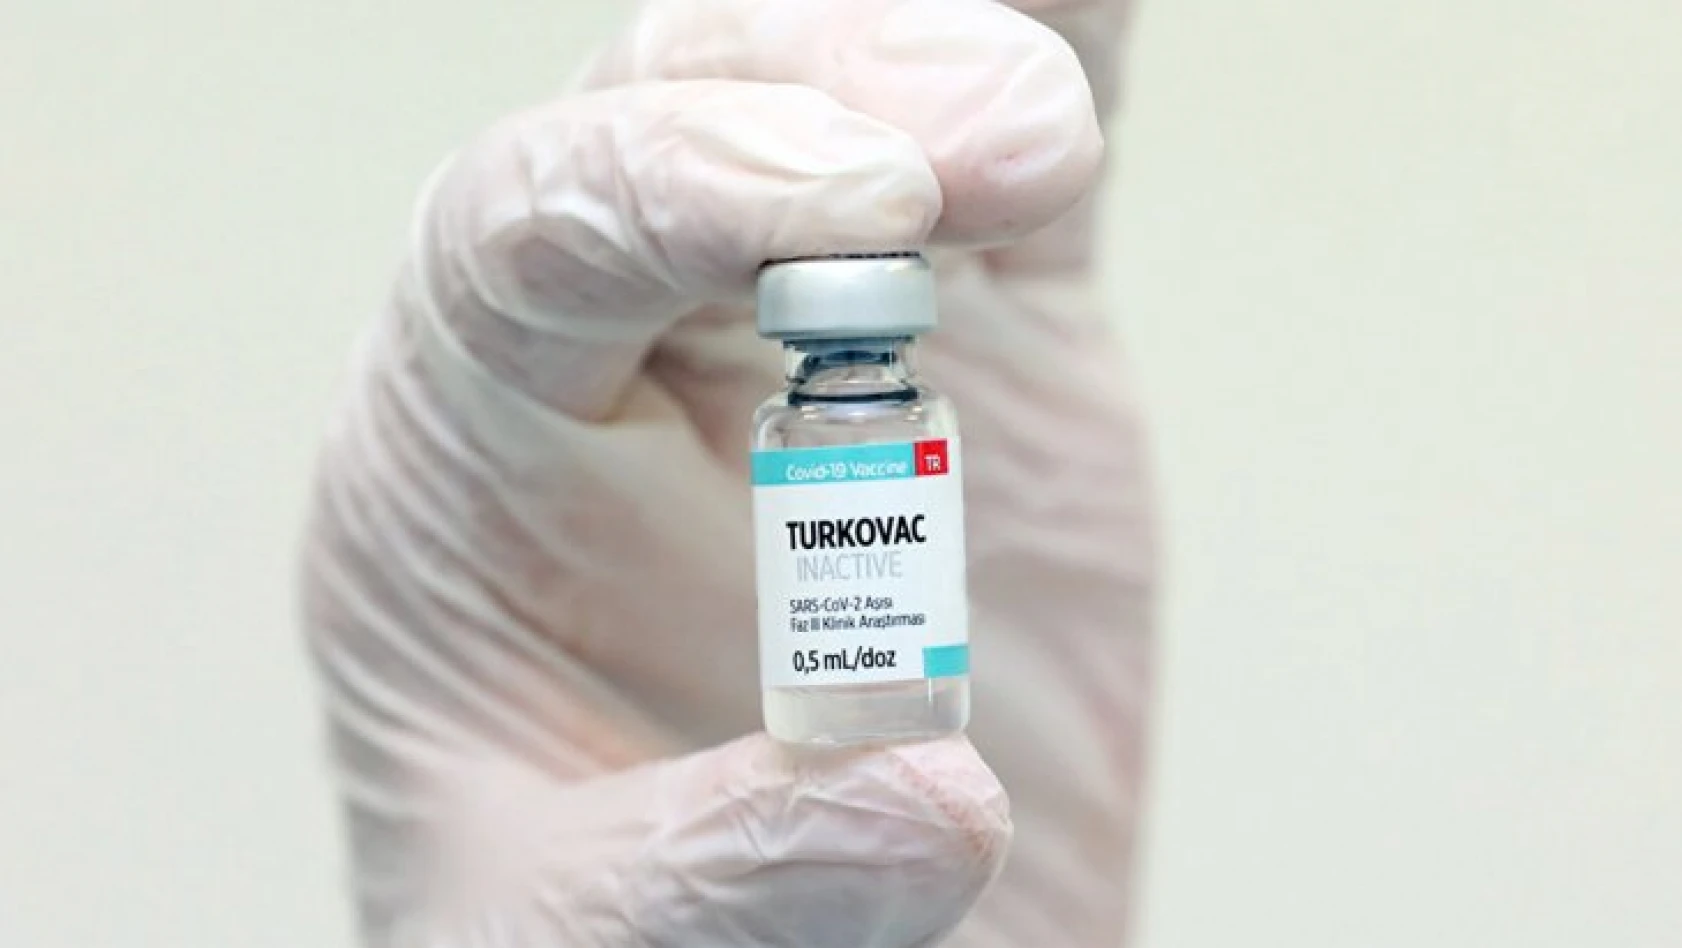 Yerli koronavirüs aşısı TURKOVAC için acil kullanım izni çıktı